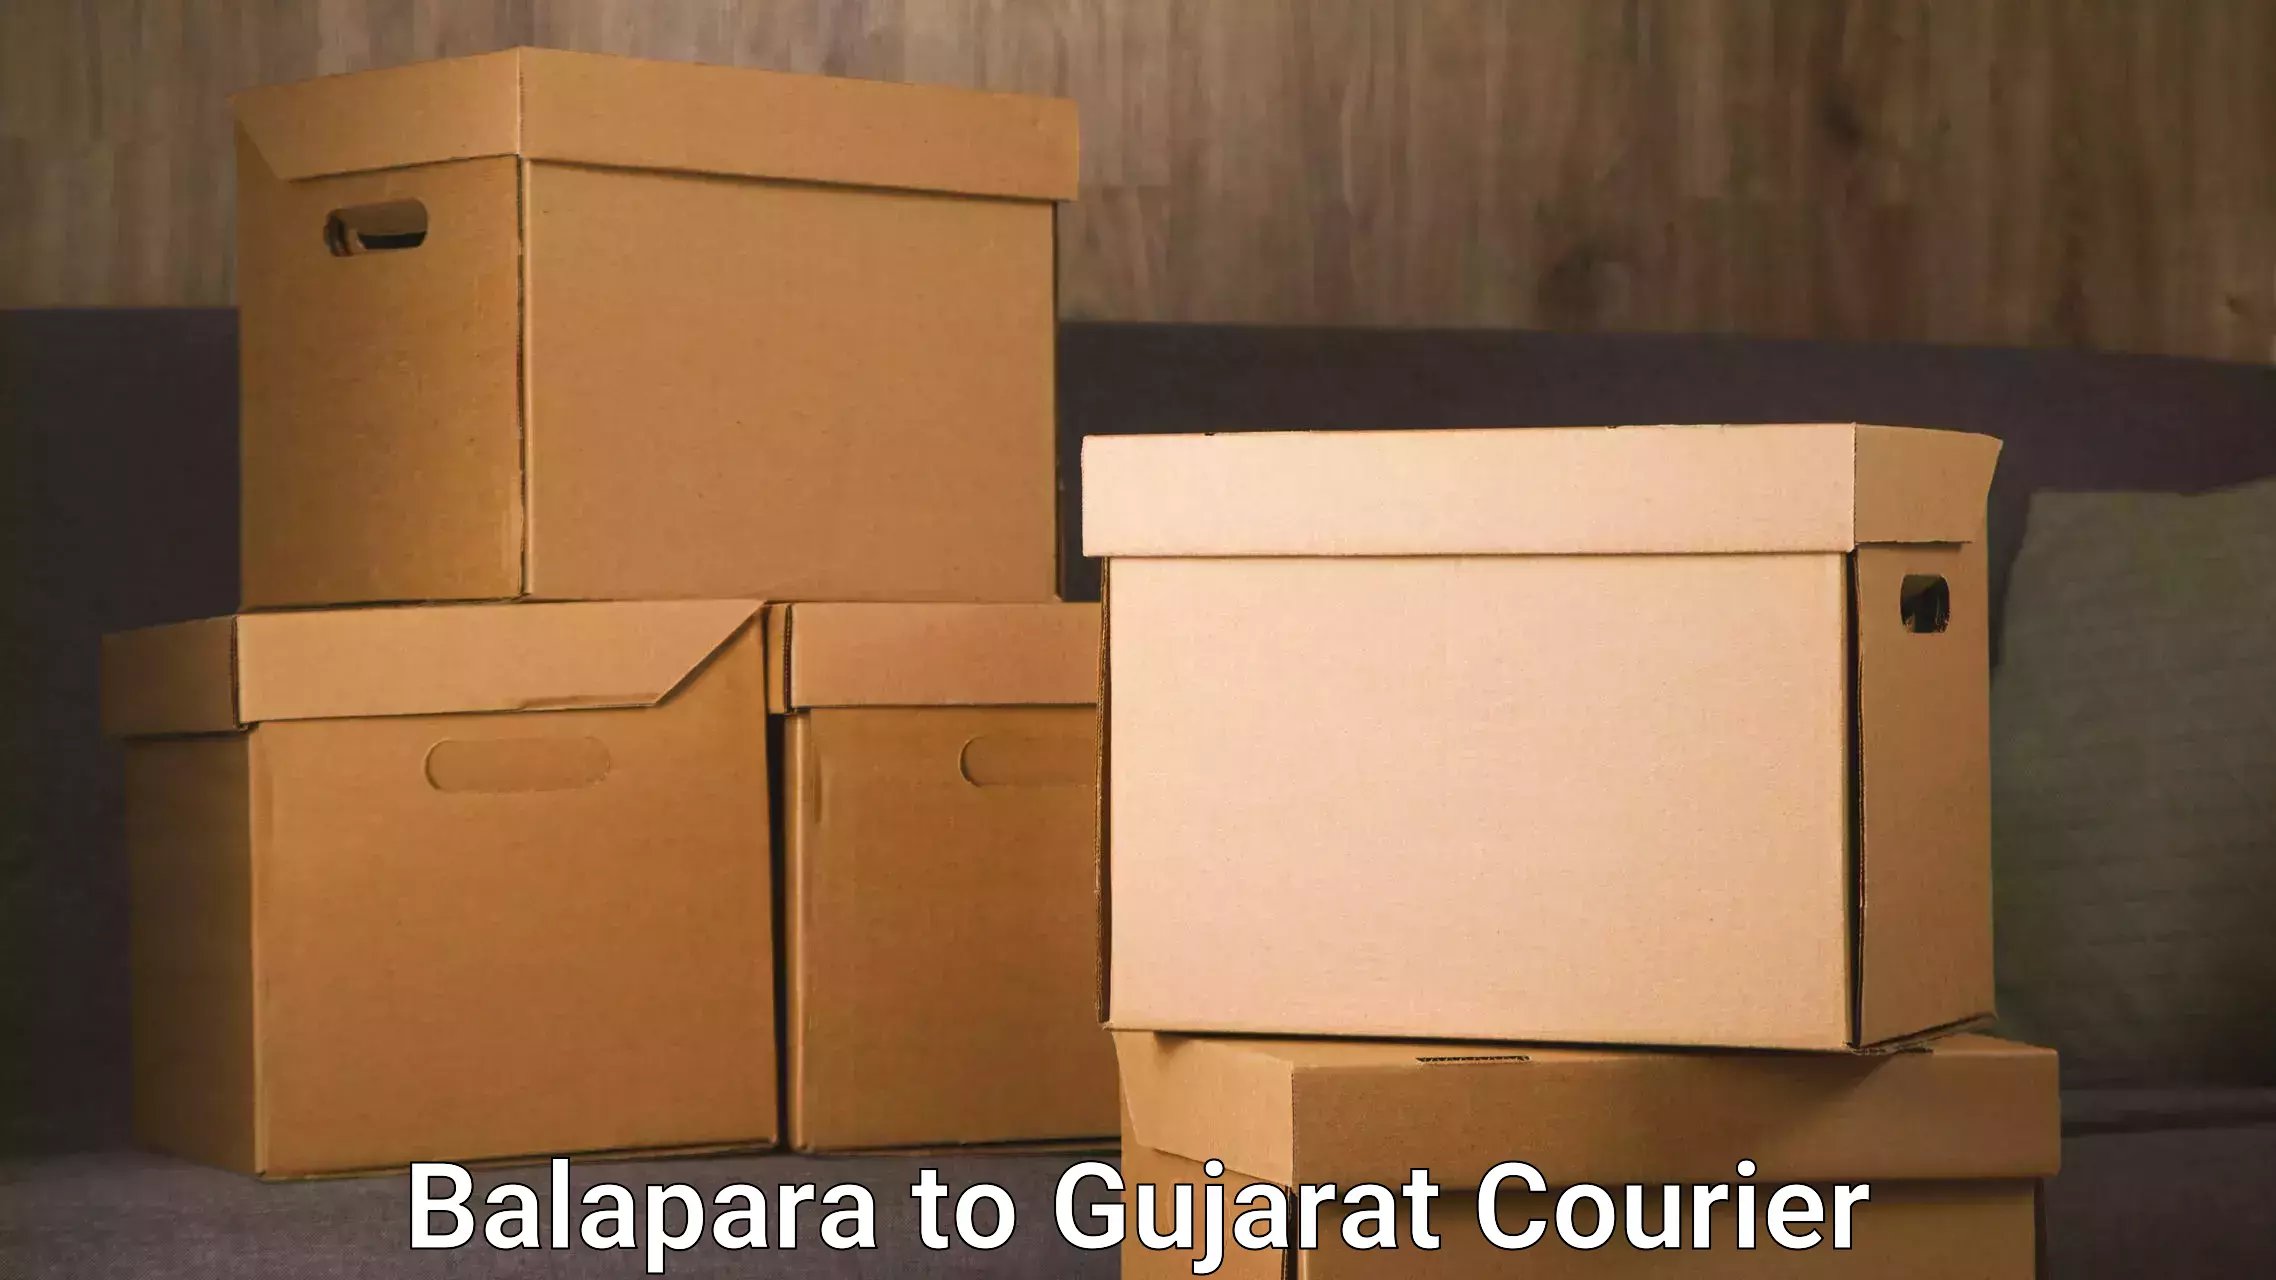 Urgent courier needs Balapara to Deesa